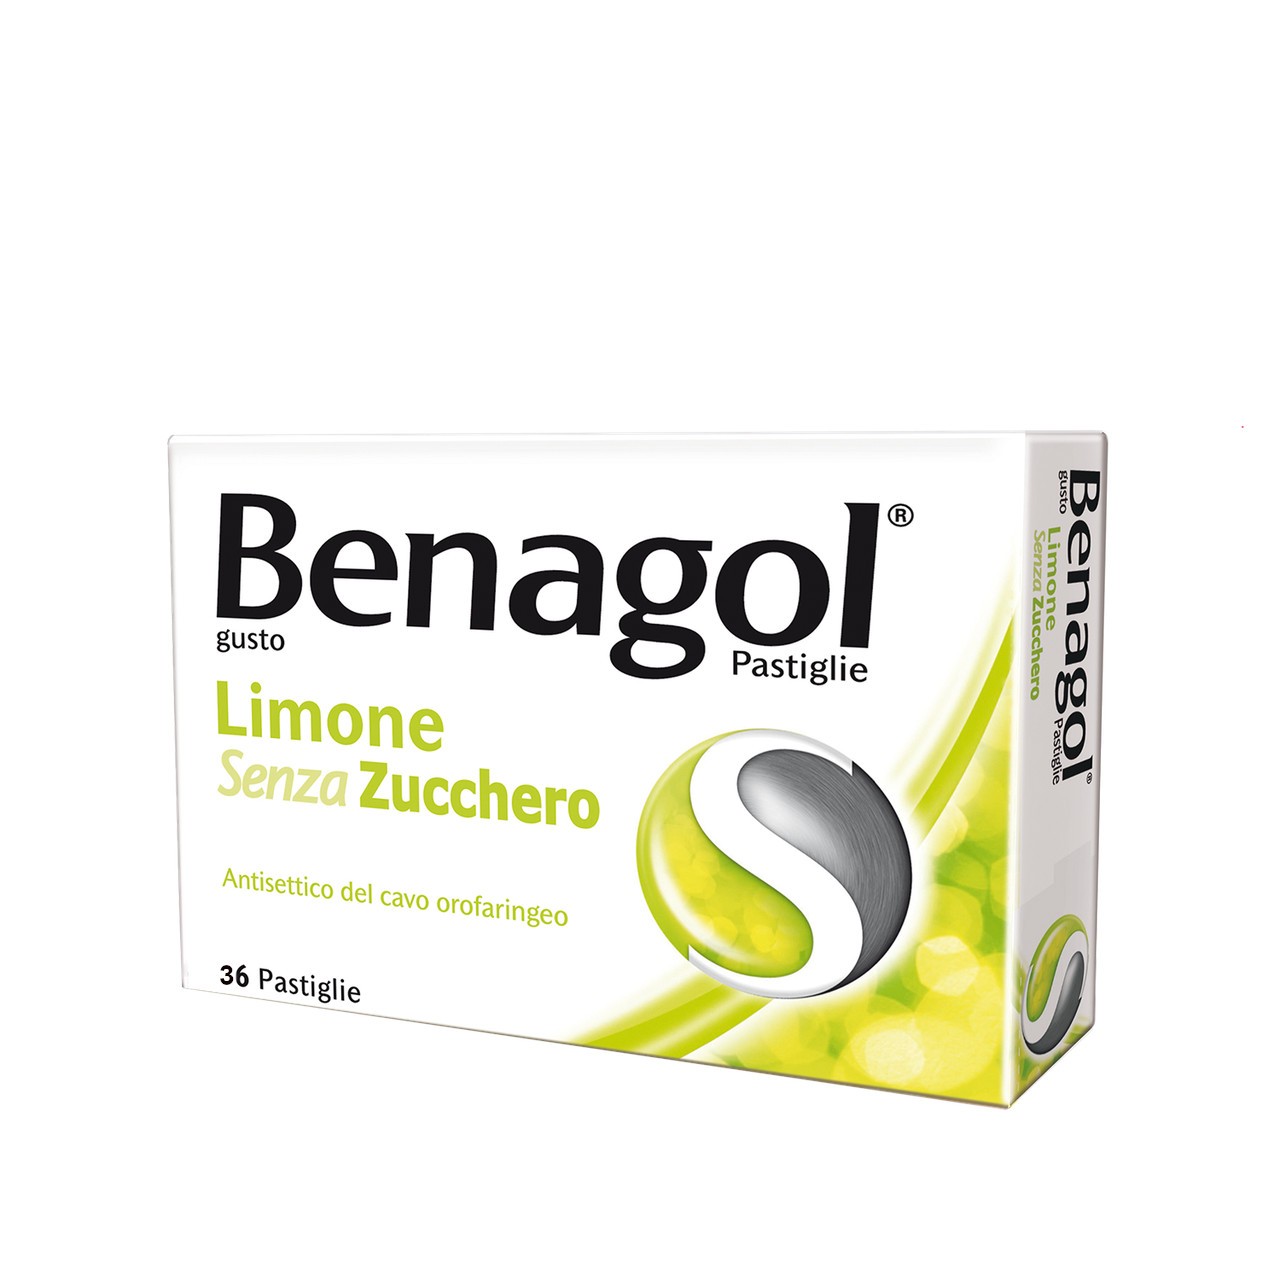 Benagol - image 1